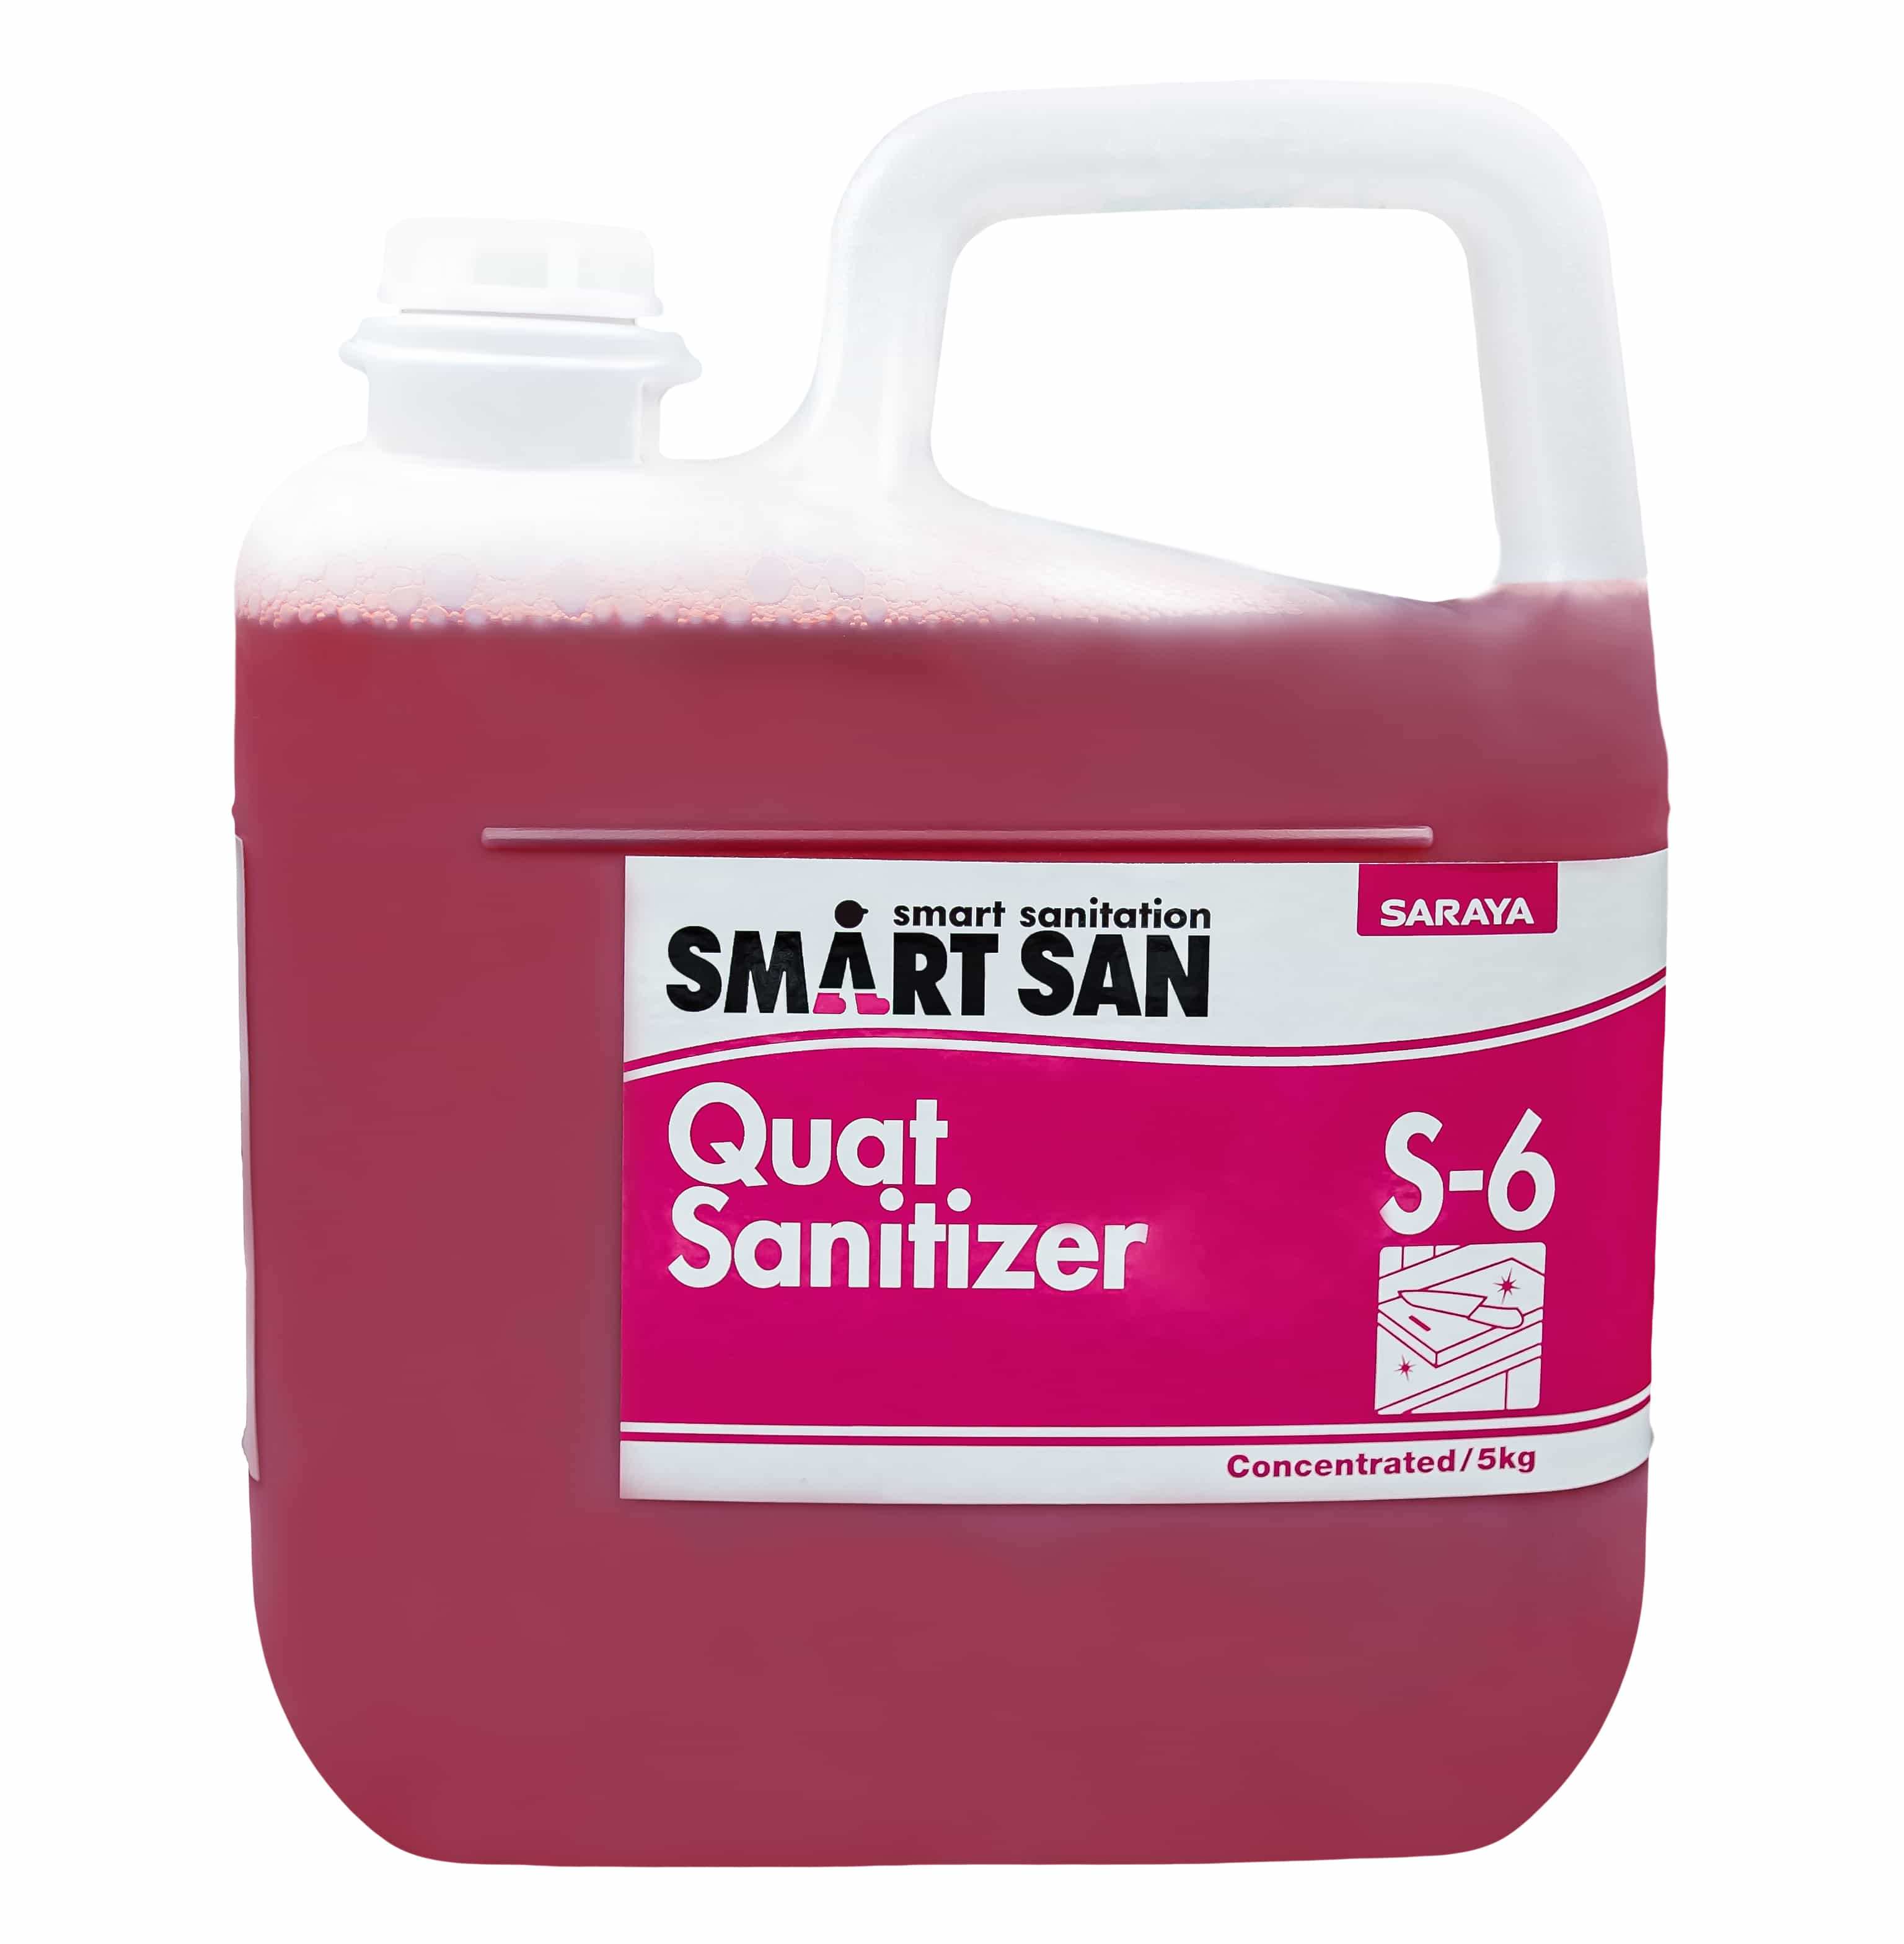 Hóa chất sát khuẩn bề mặt Quat Sanitizer S-6